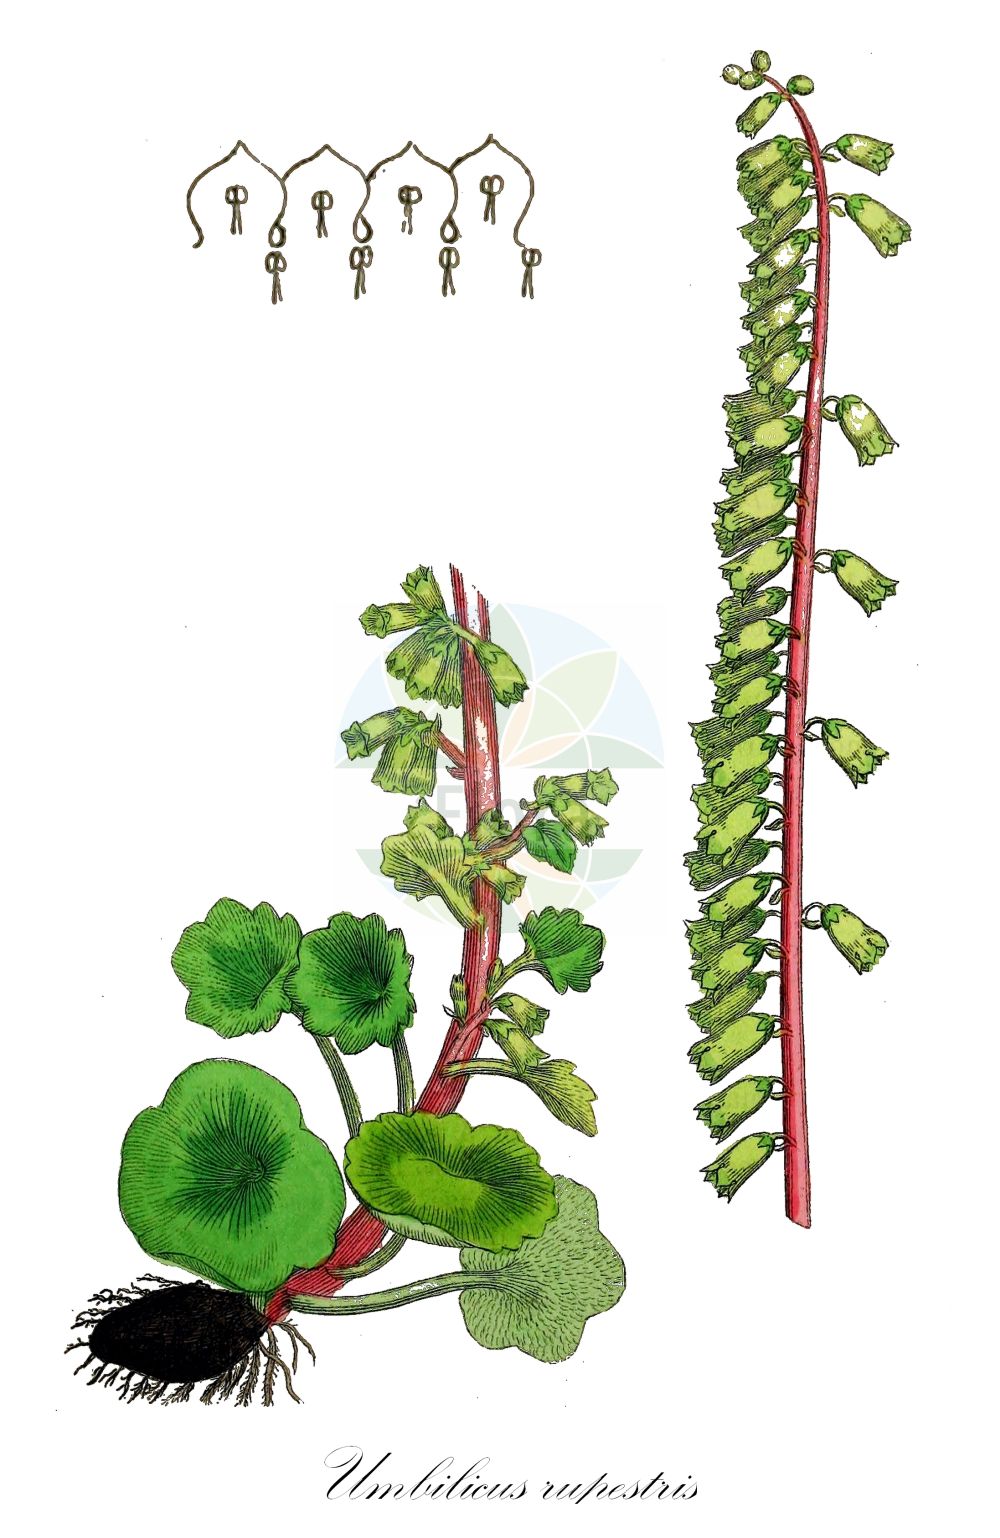 Historische Abbildung von Umbilicus rupestris (Navelwort). Das Bild zeigt Blatt, Bluete, Frucht und Same. ---- Historical Drawing of Umbilicus rupestris (Navelwort). The image is showing leaf, flower, fruit and seed.(Umbilicus rupestris,Navelwort,Cotyledon pendulina,Cotyledon tuberosa,Cotyledon umbilicus-veneris,Umbilicus deflexus,Umbilicus patulus,Umbilicus pendulinus,Umbilicus rupestris,Umbilicus,Crassulaceae,Dickblattgewächse,Stonecrop family,Blatt,Bluete,Frucht,Same,leaf,flower,fruit,seed,Sowerby (1790-1813))